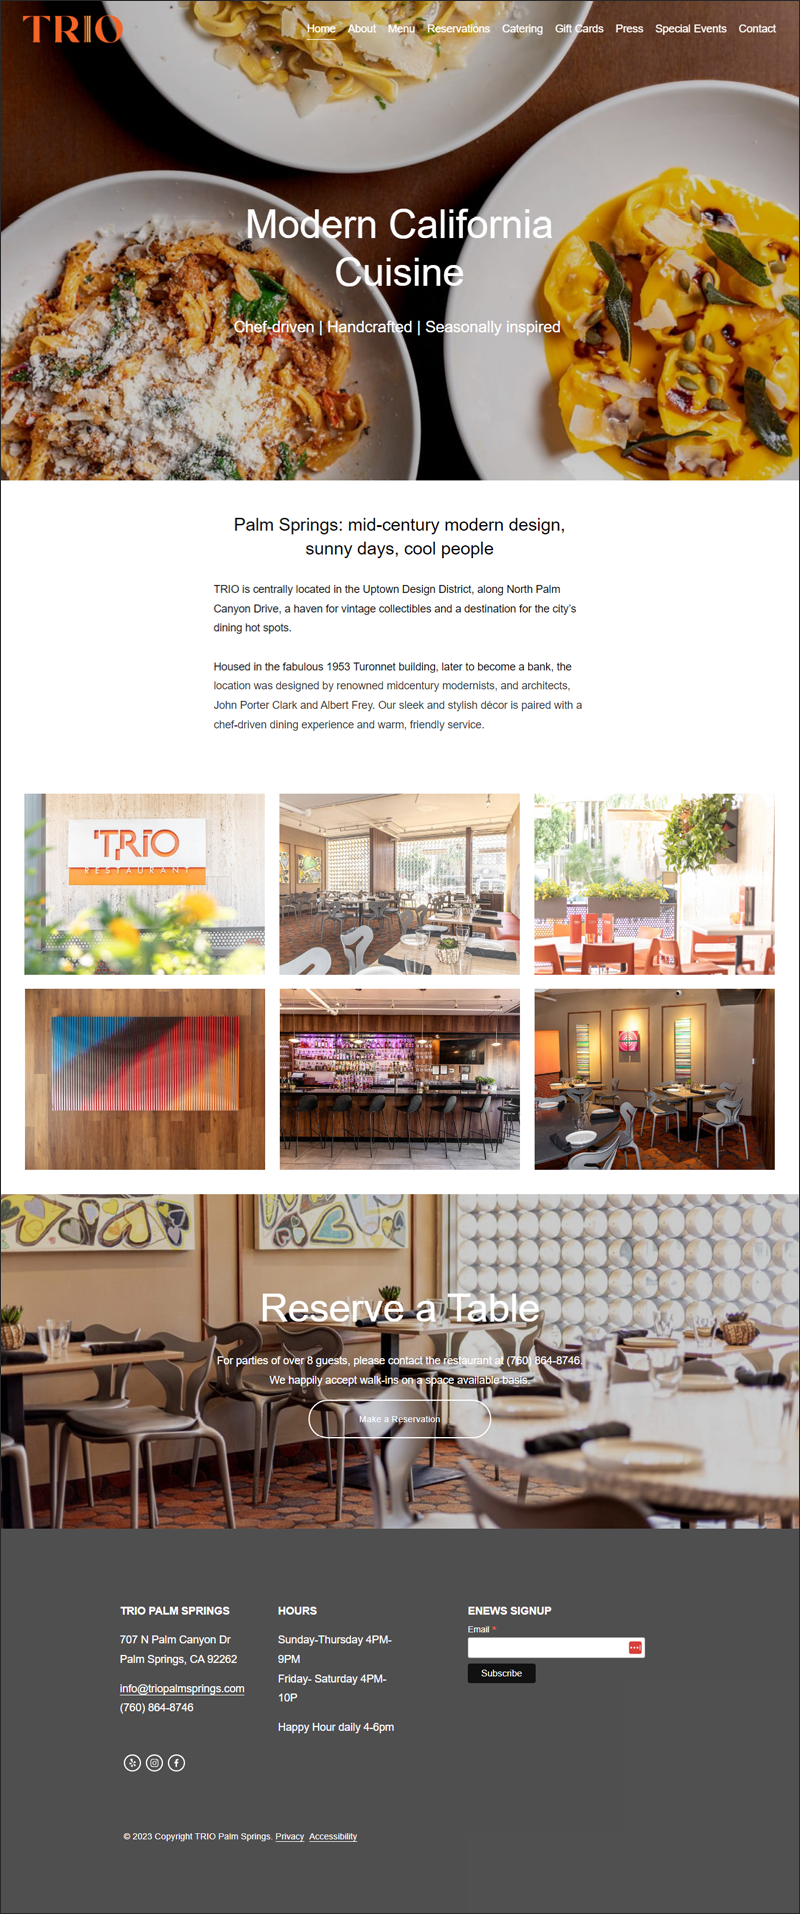 TRIO Restaurant website